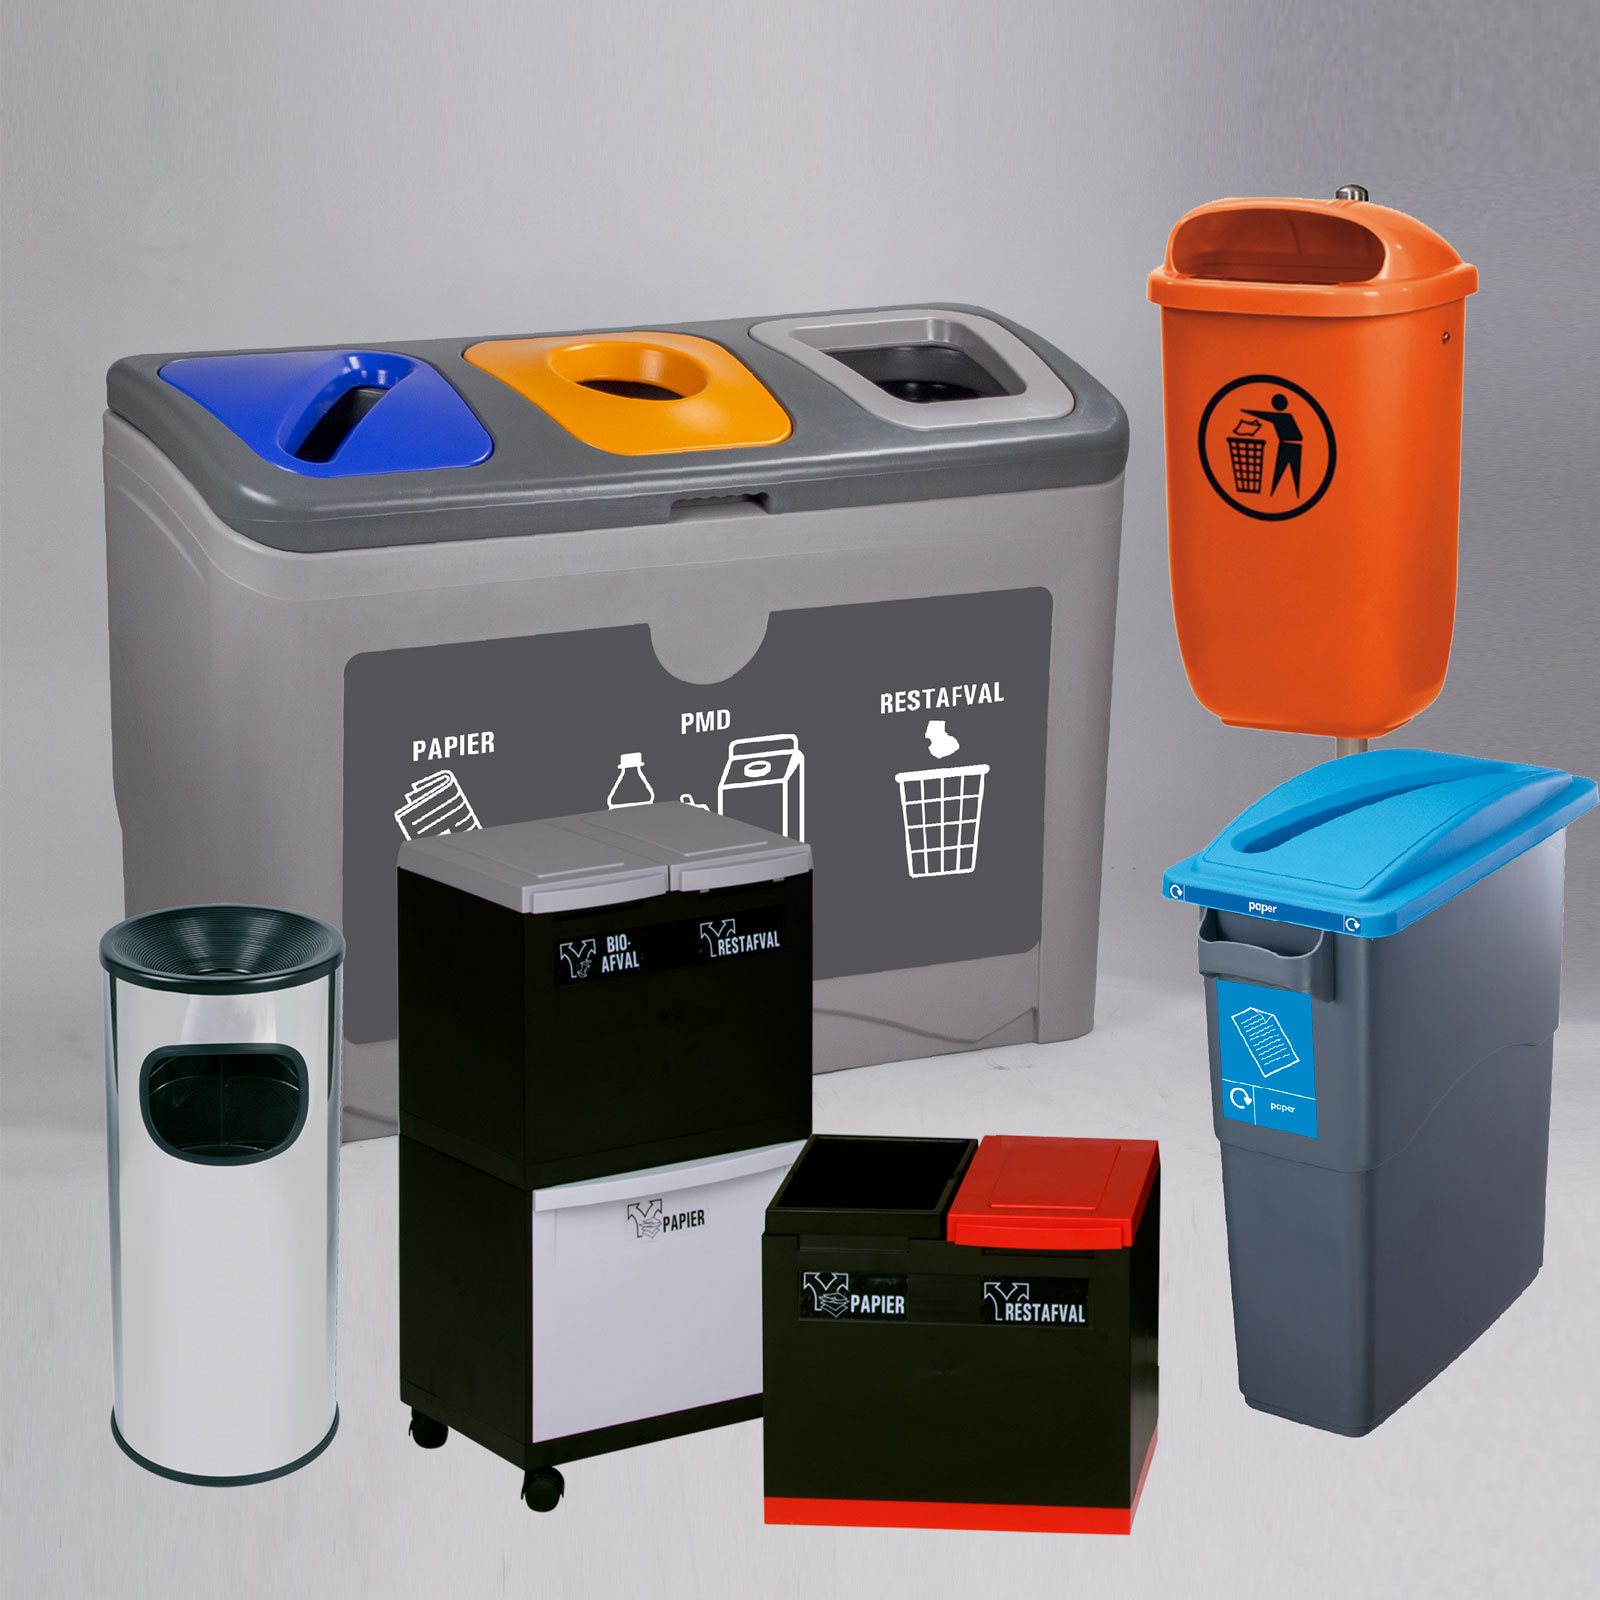 Mülltonne auf Rollen Presse Anzug Standard Haushalt Müll Recycling Behälter